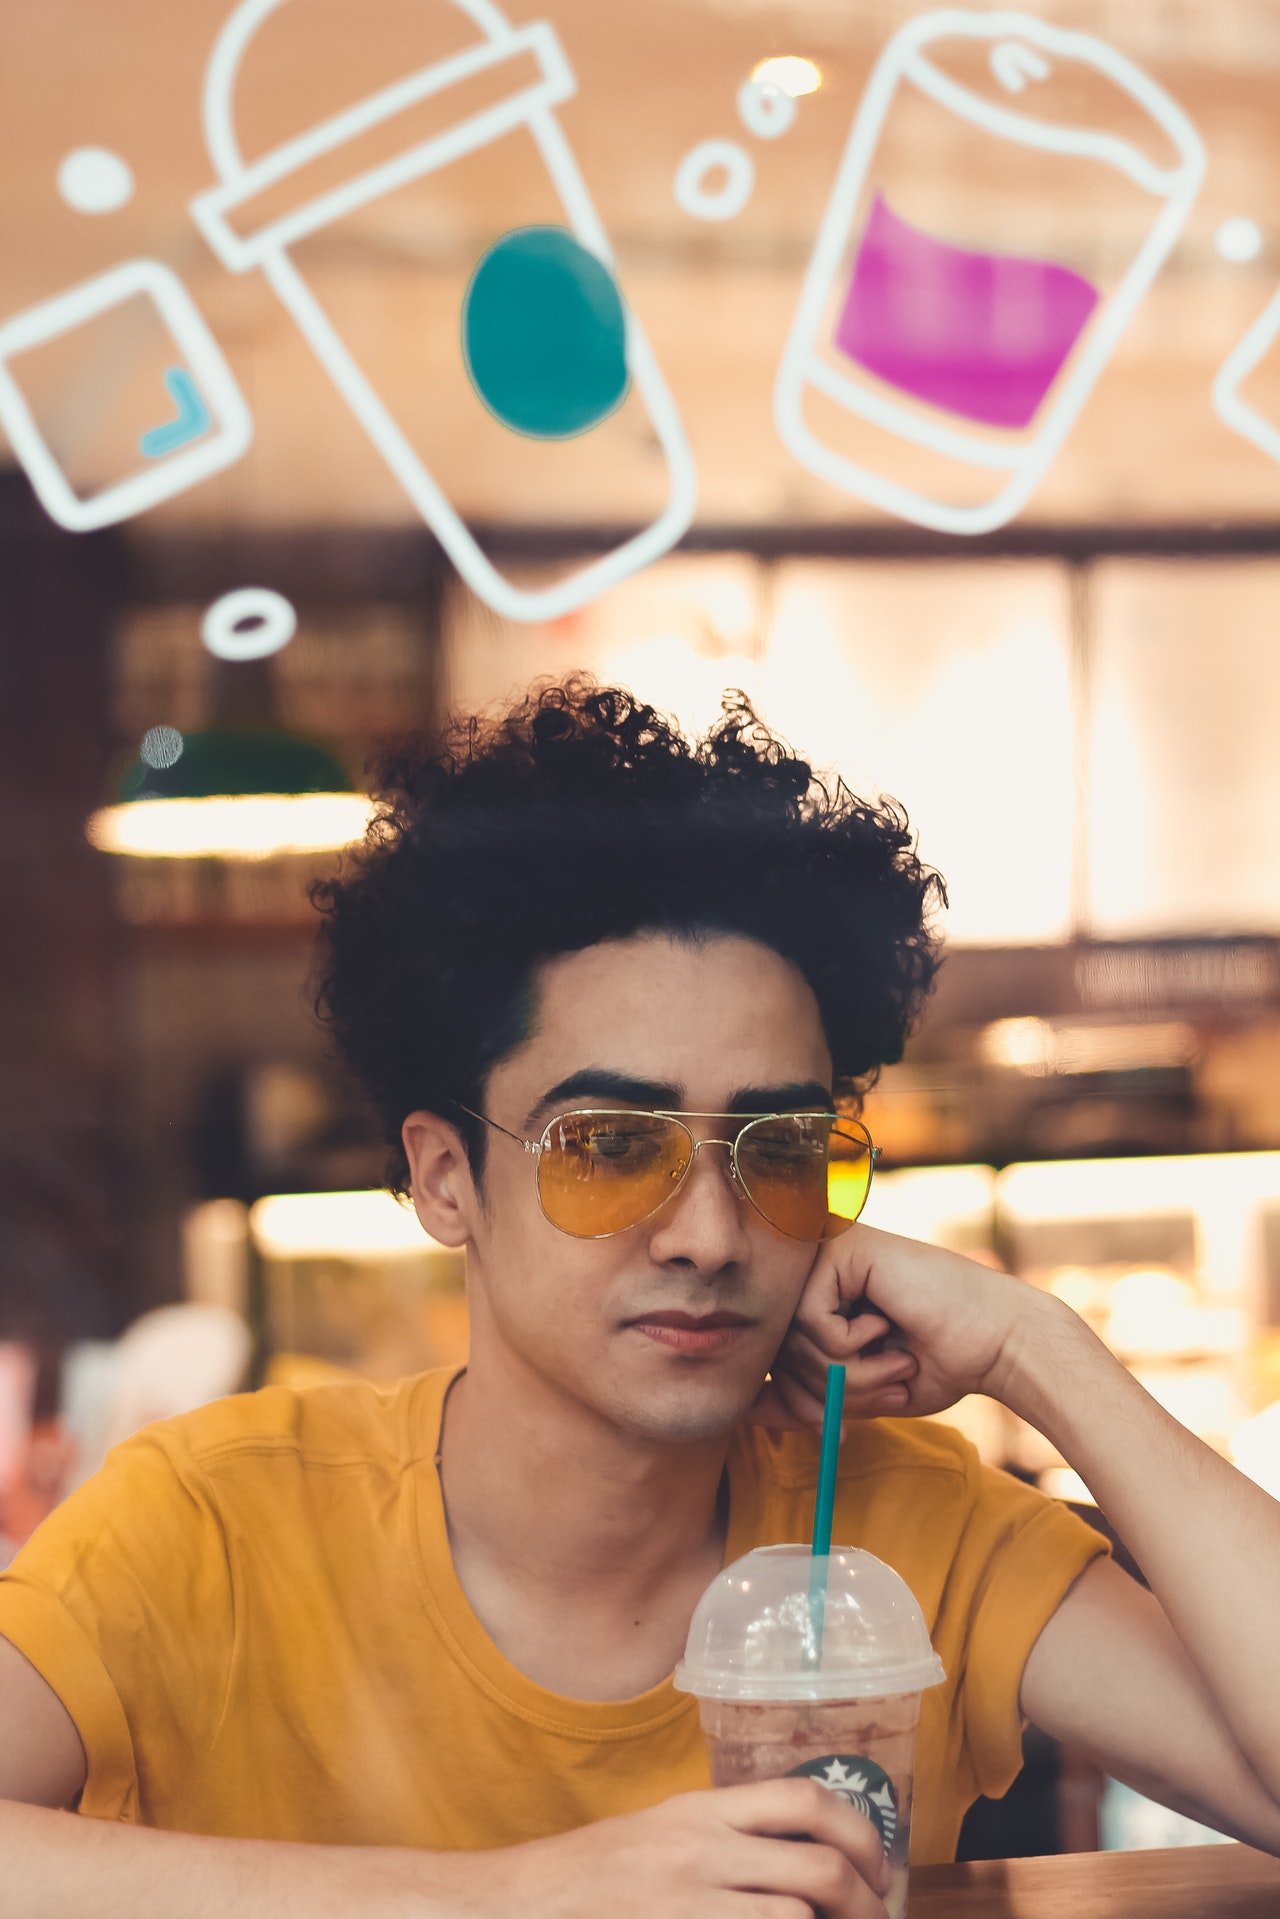 Un joven sentado en una cafetería bebiendo un café. | Foto: Pexels